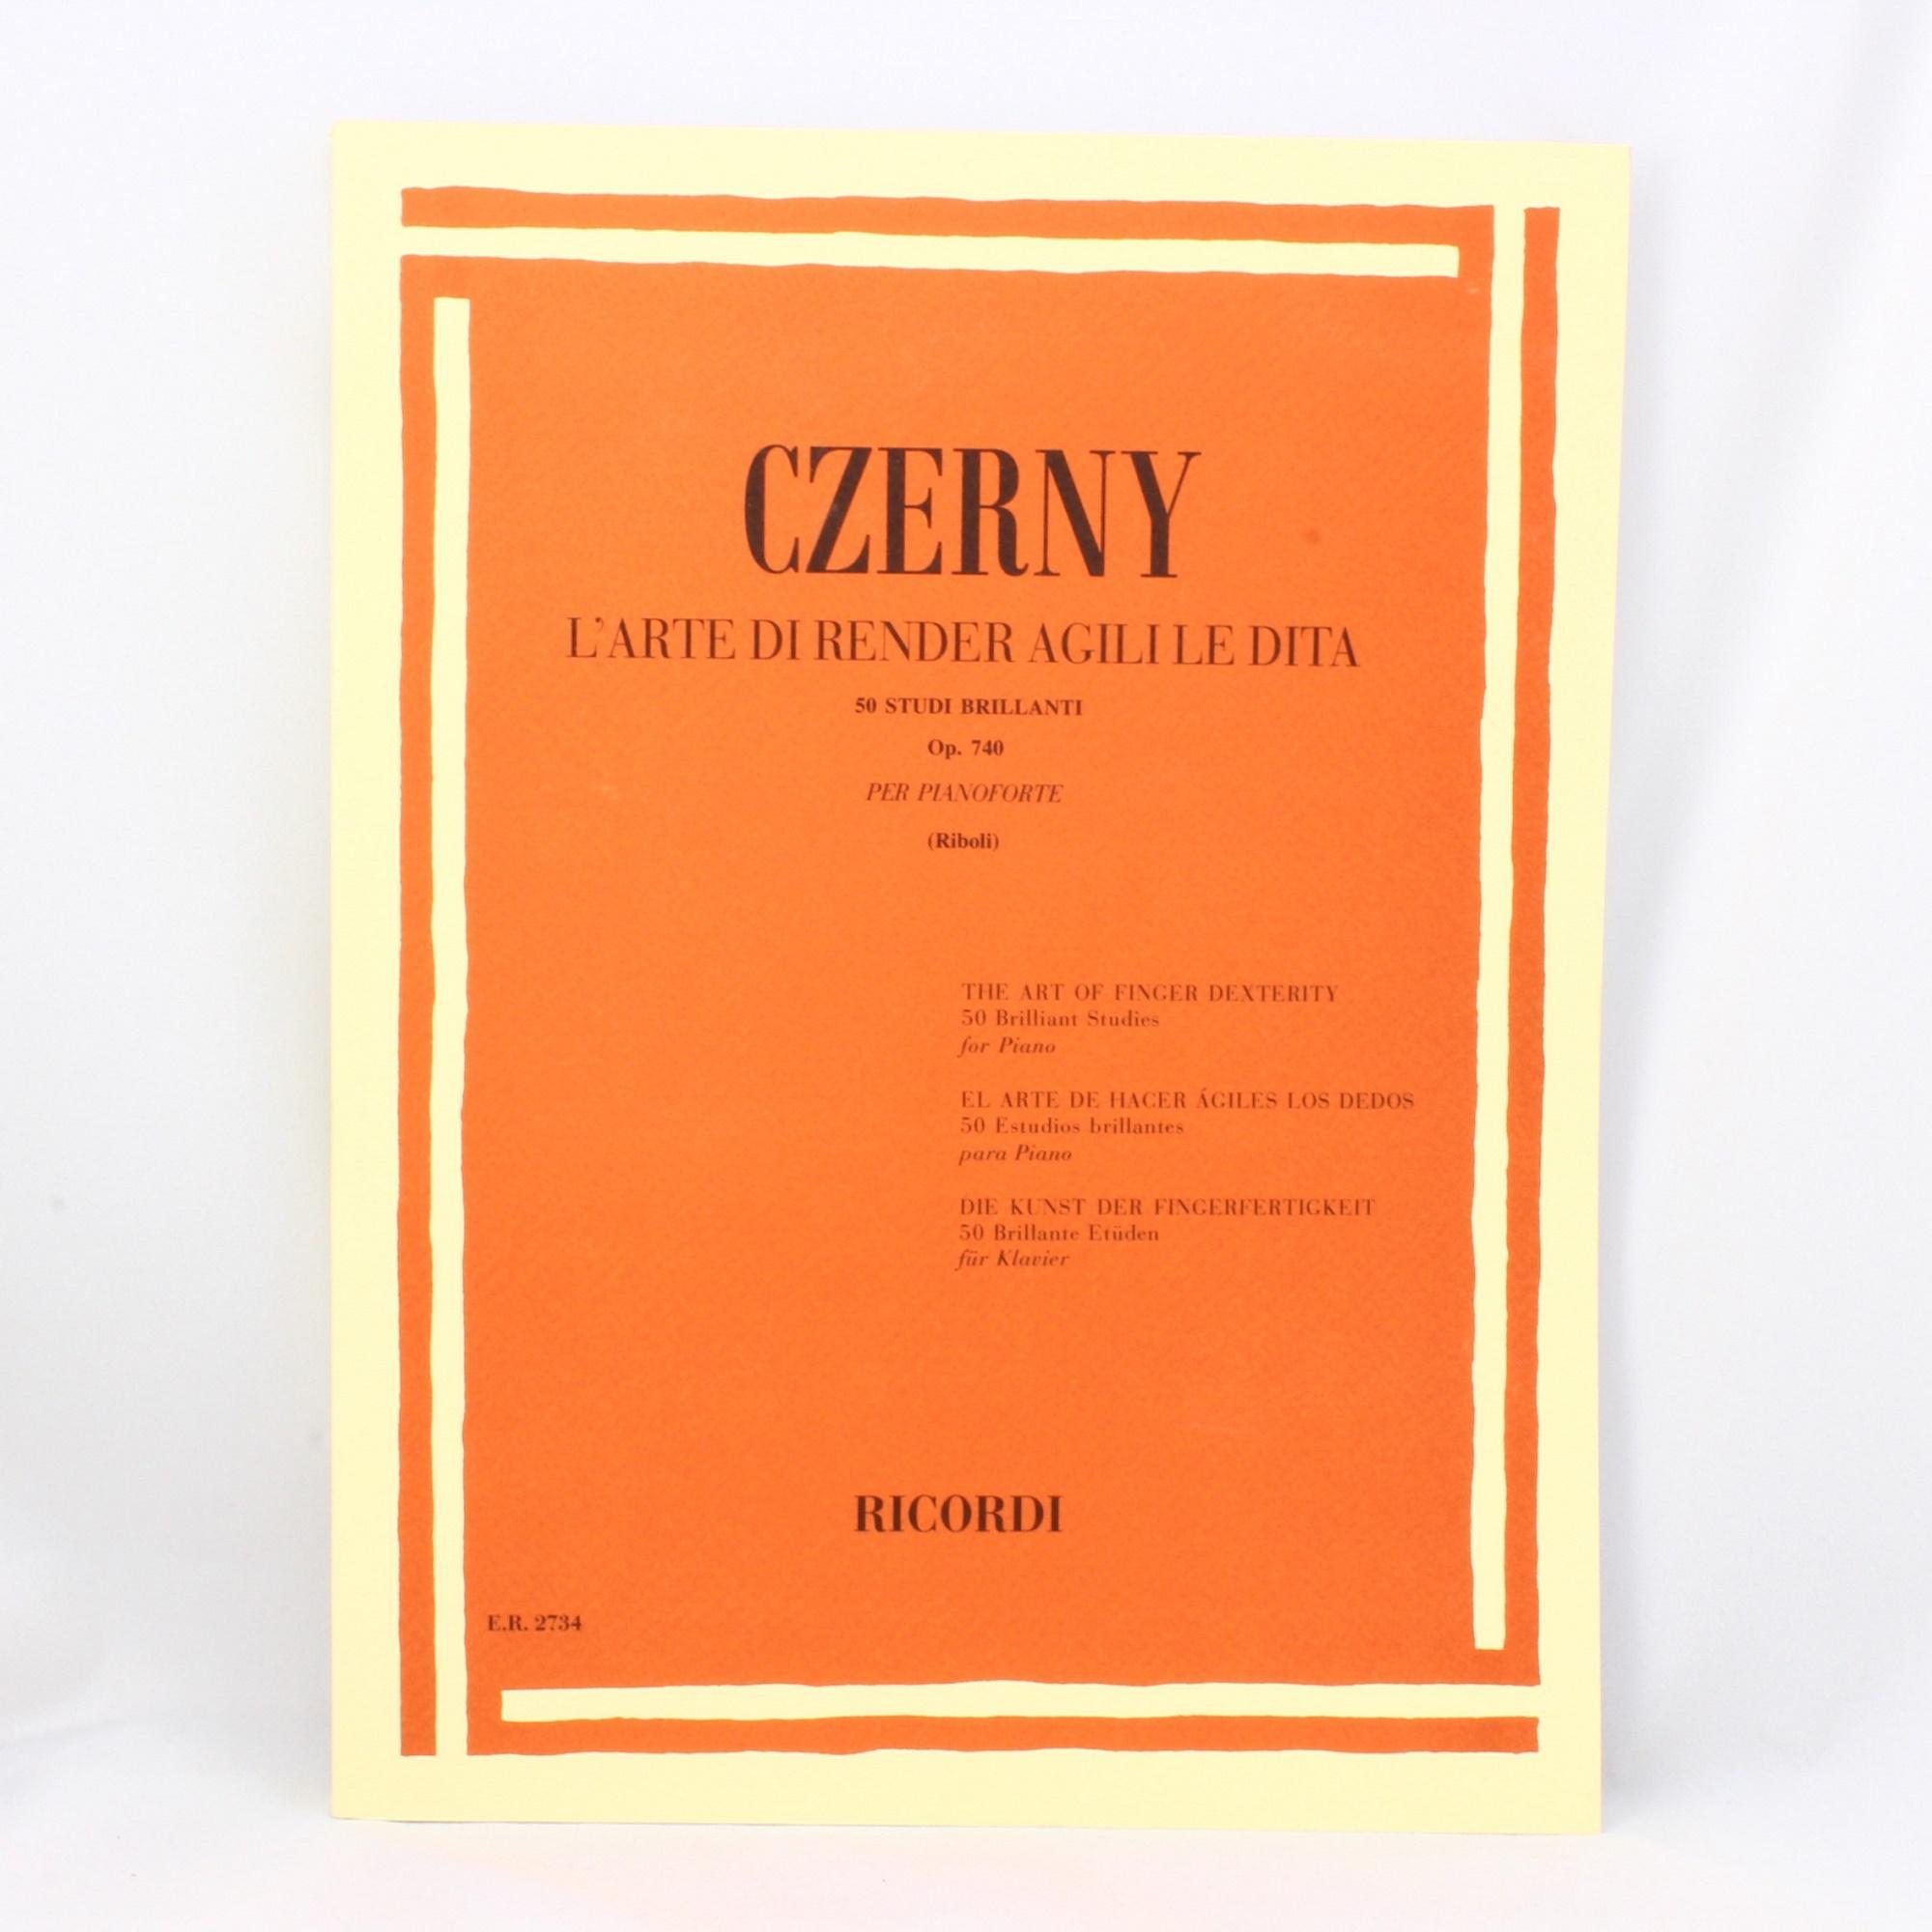 Czerny L'arte di render agili le dita 50 Studi Brillanti Op. 740 per pianoforte (Riboli) - Ricordi